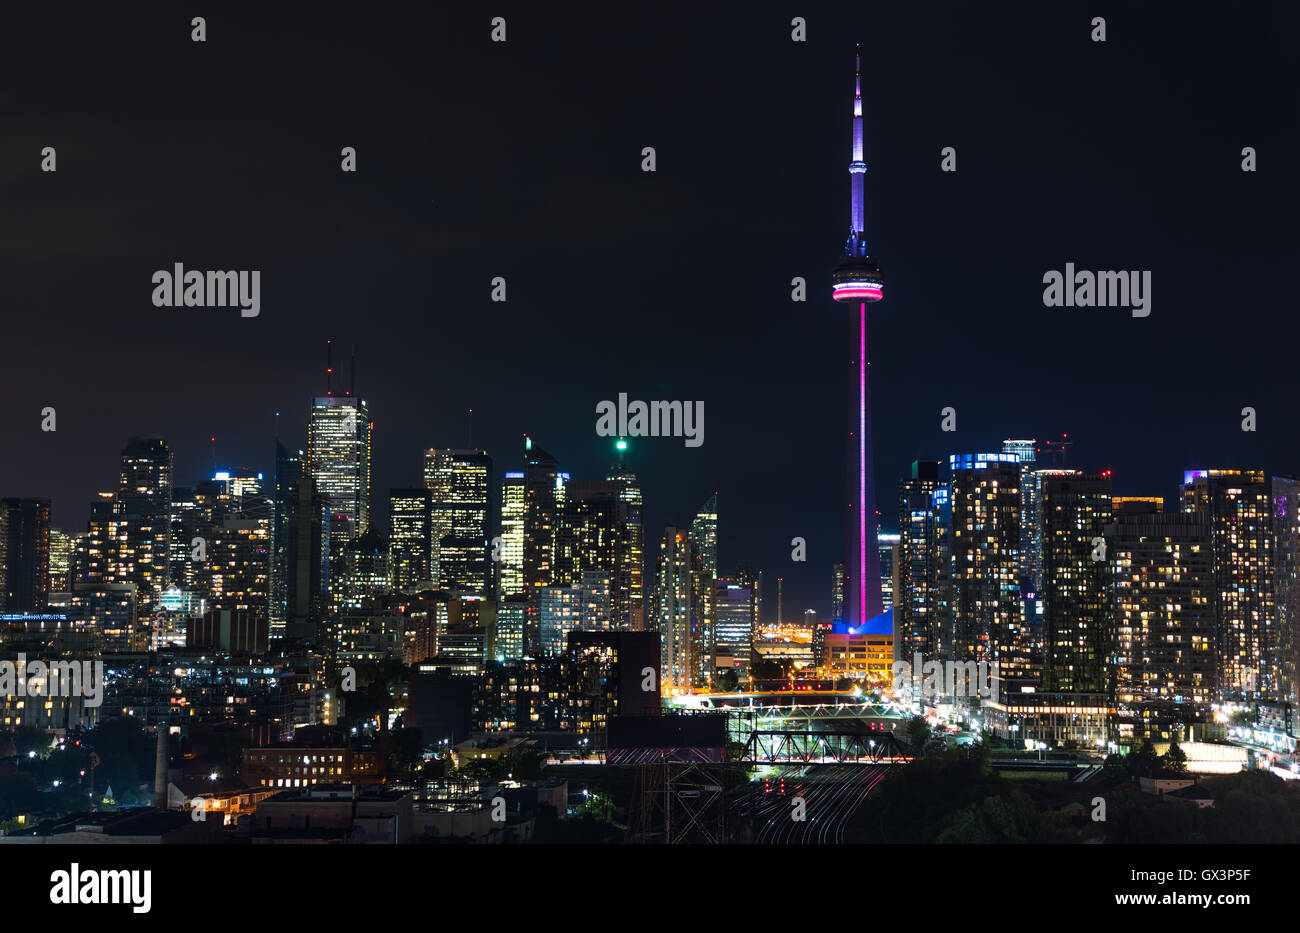 Iluminado de paisaje urbano de Toronto. Horizonte de edificios y torres de oficinas en un caluroso, lluvioso y húmedo de agosto de noche. Foto de stock